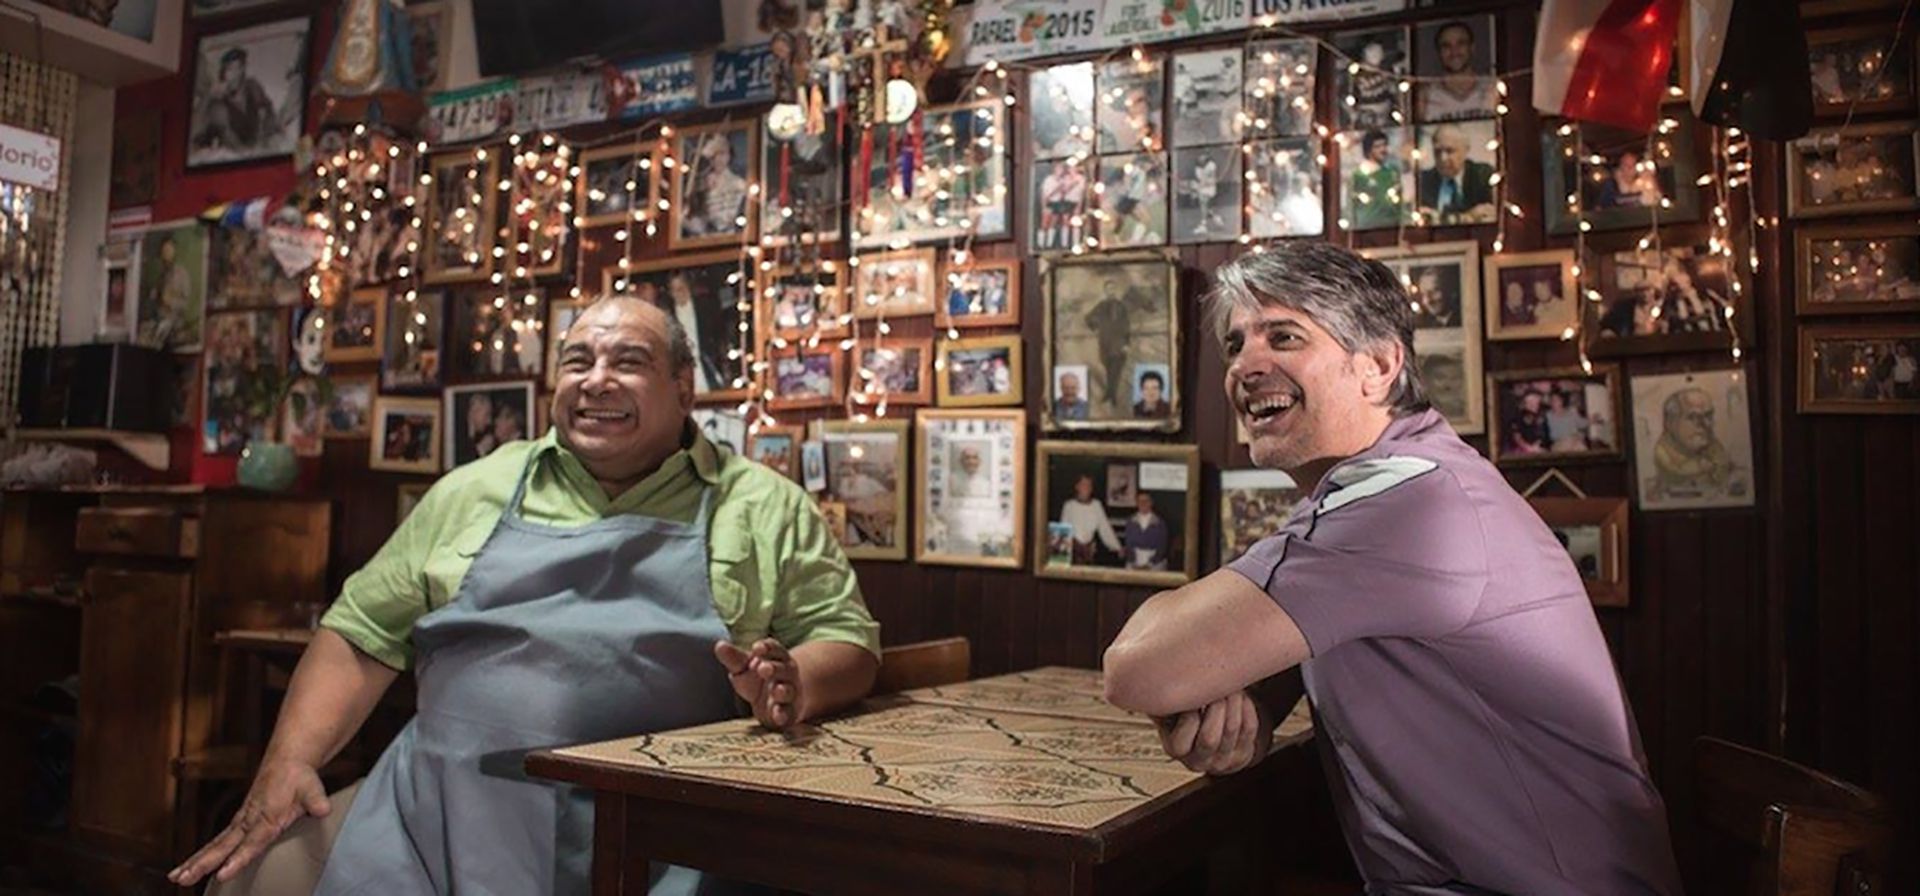 Pablo Echarri y Roly Serrano, protagonistas de "El kiosco", la película que se filmó en la pizzería 